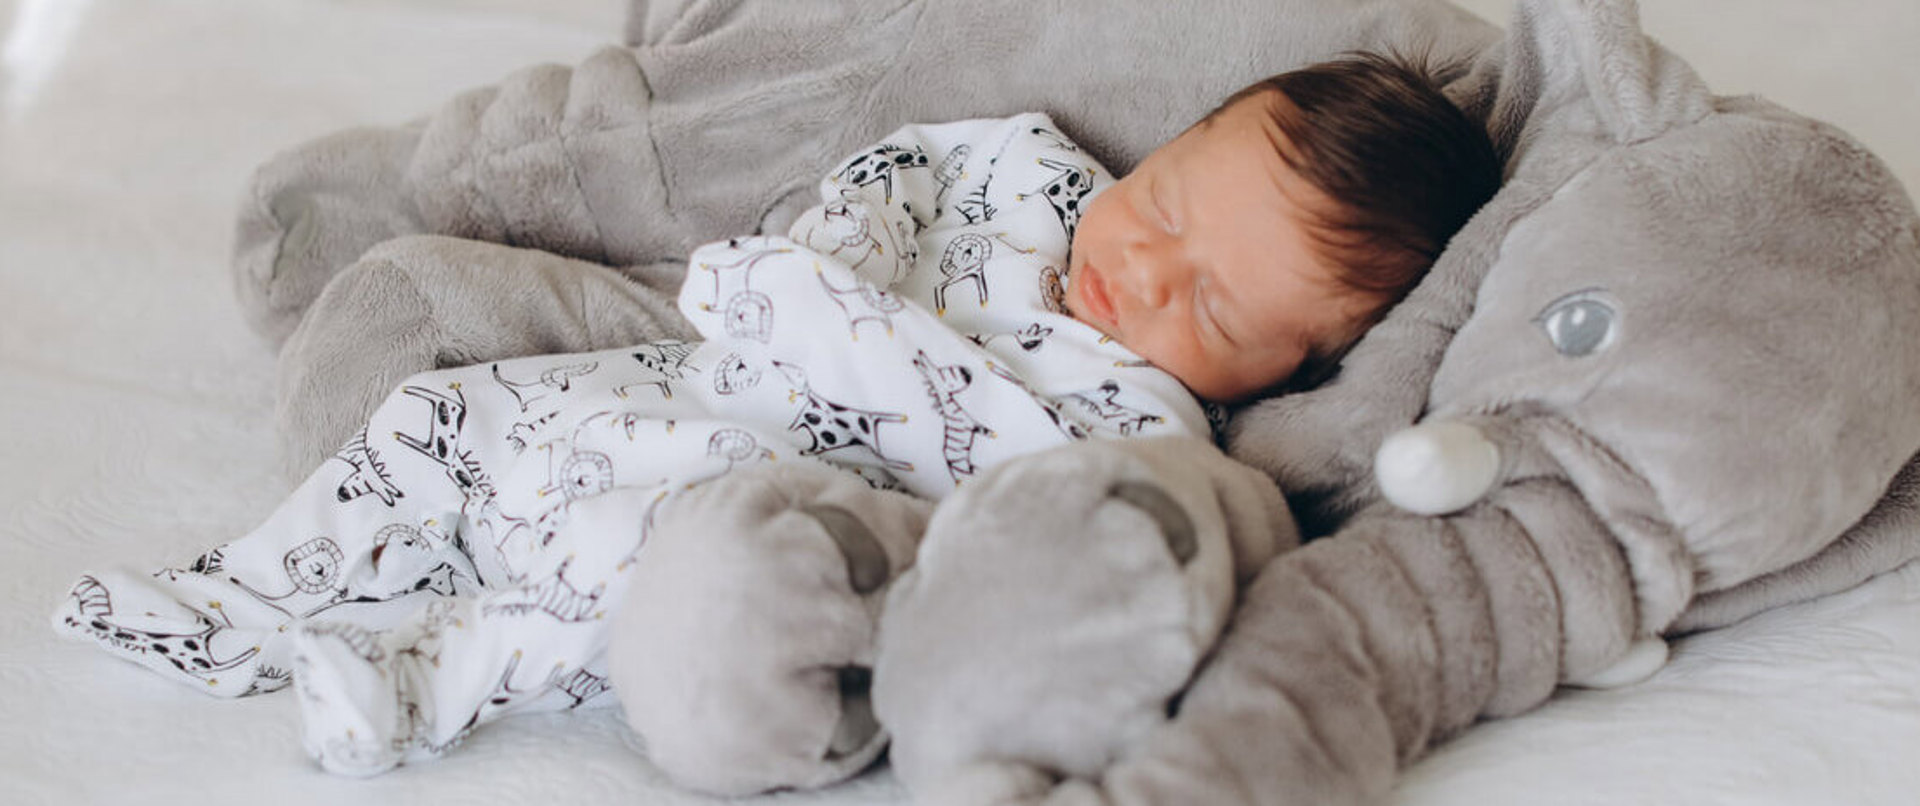 Bebeklerde Rahat Uyku: Uyku Süresi ve Uyku Düzeni Nasıl Olmalıdır?